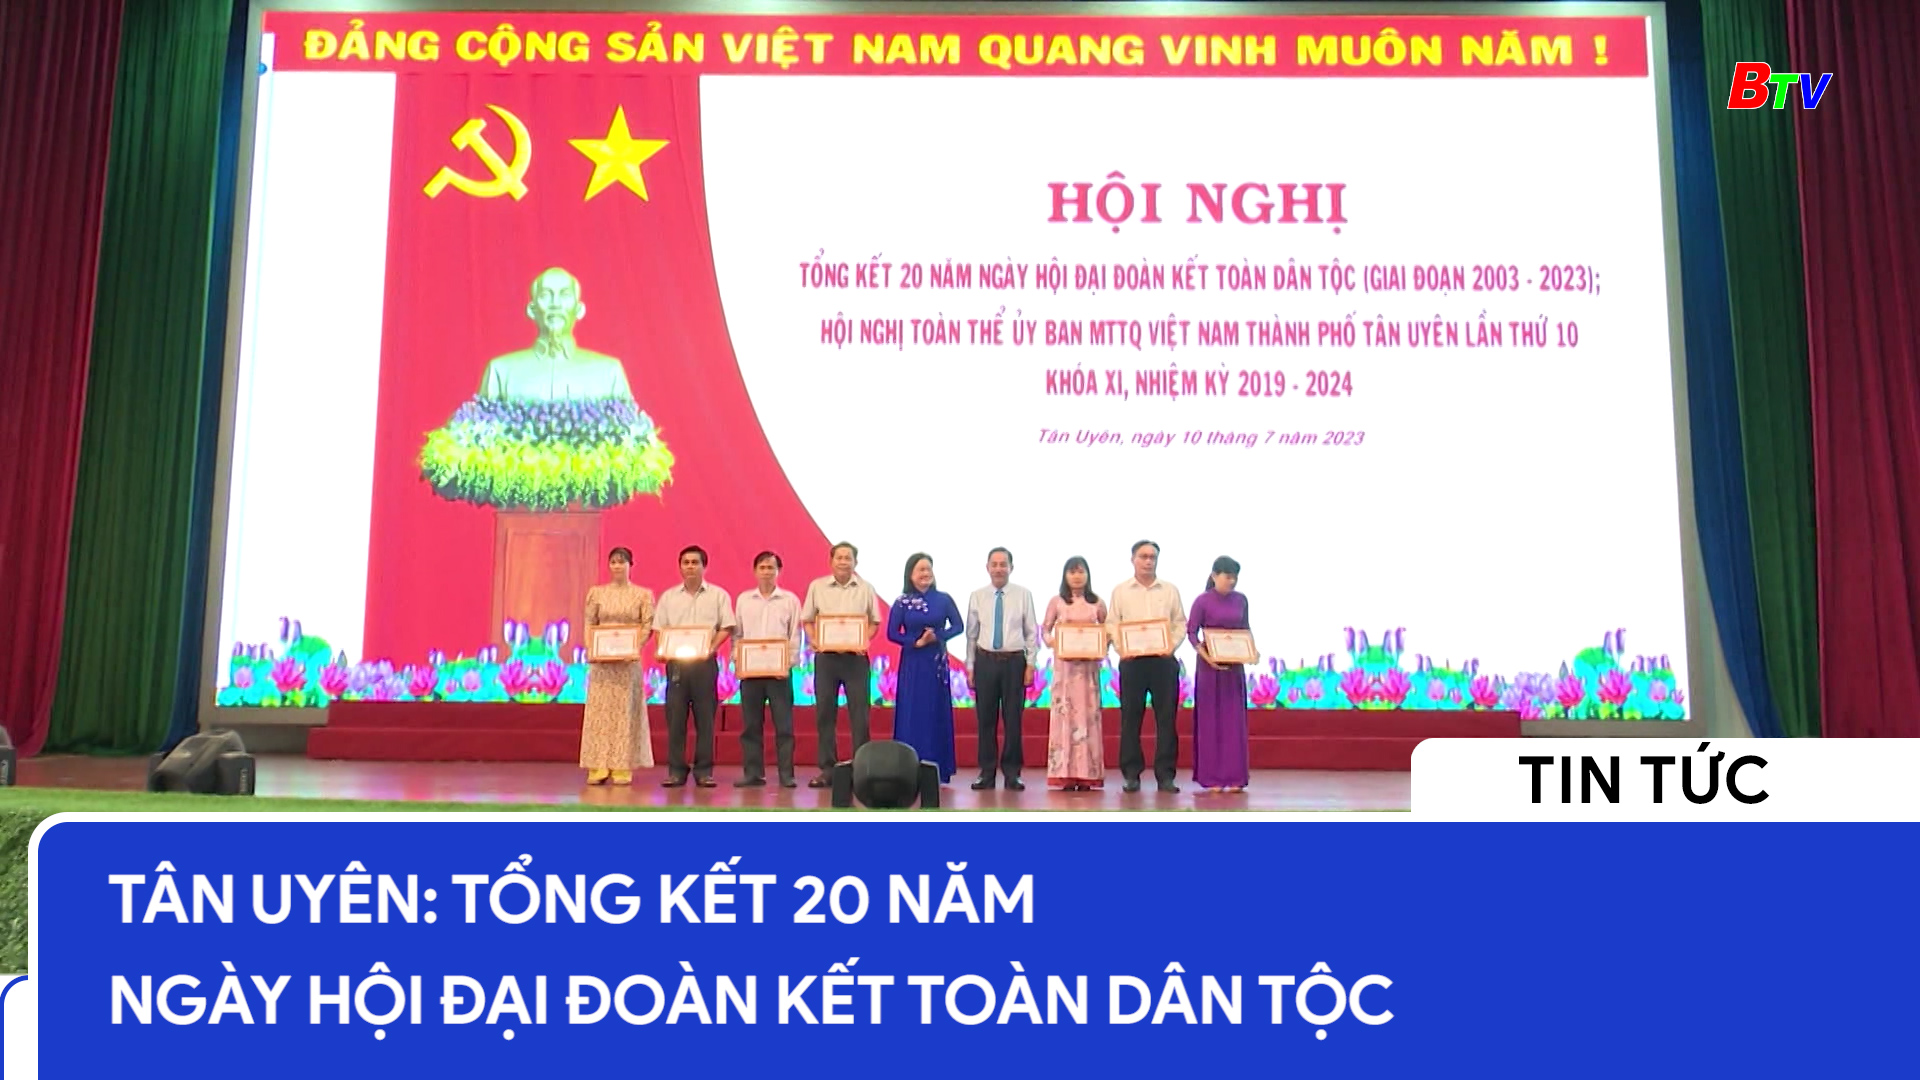 Tân Uyên - Tổng kết 20 năm ngày hội Đại đoàn kết toàn dân tộc